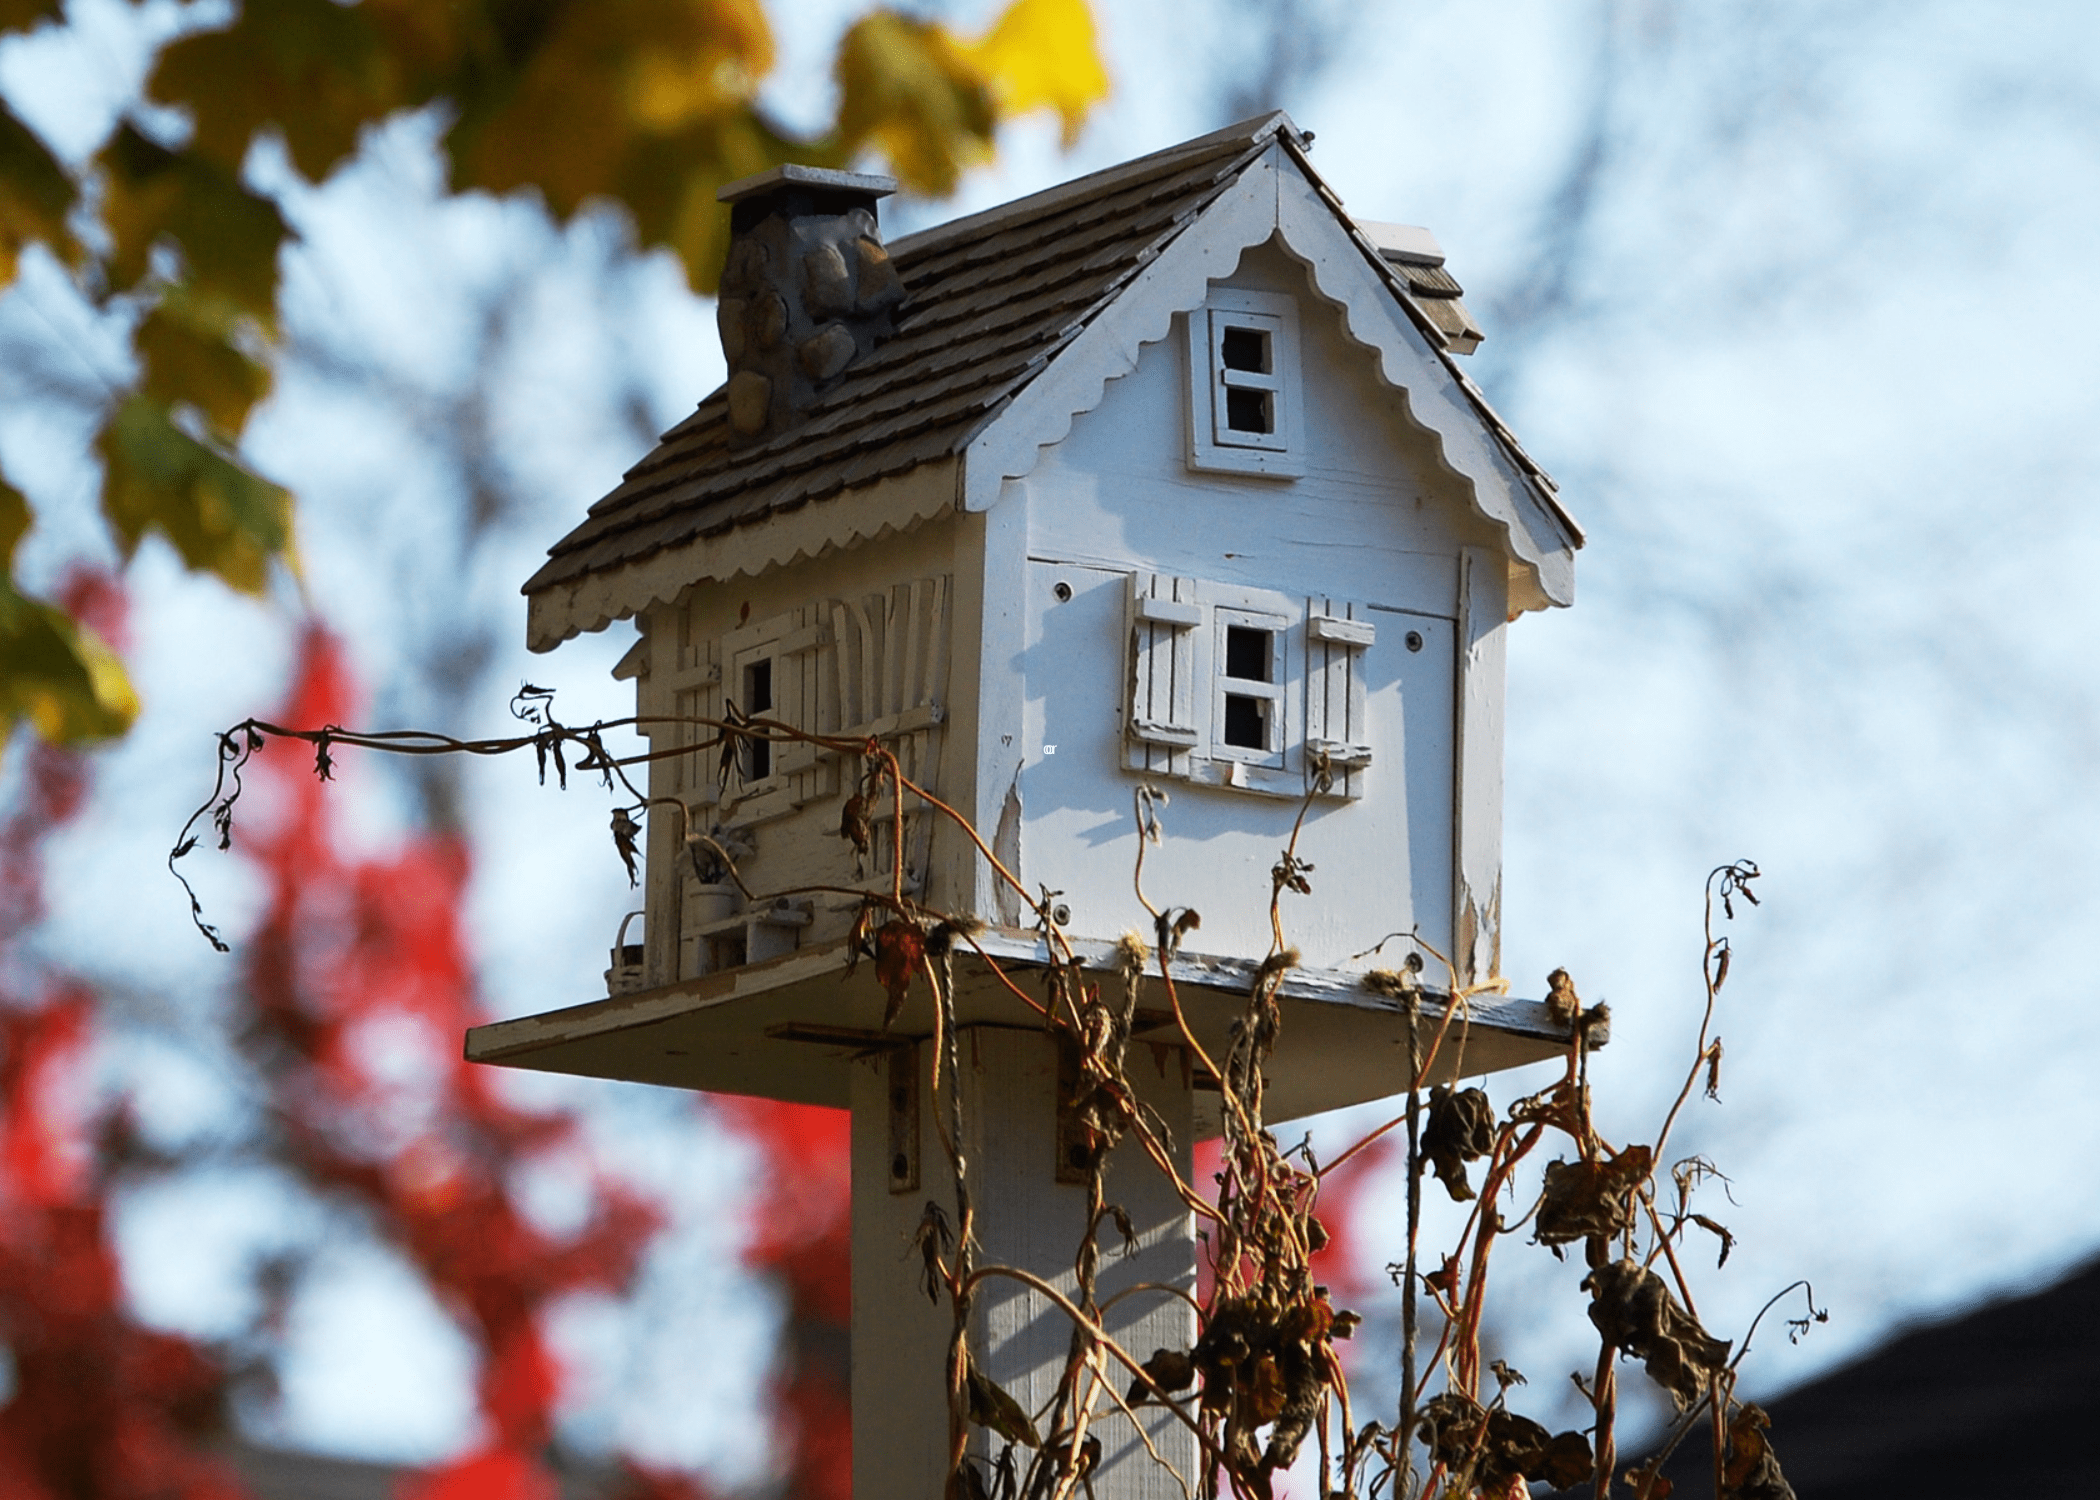 white birdhouse with scalloped edge